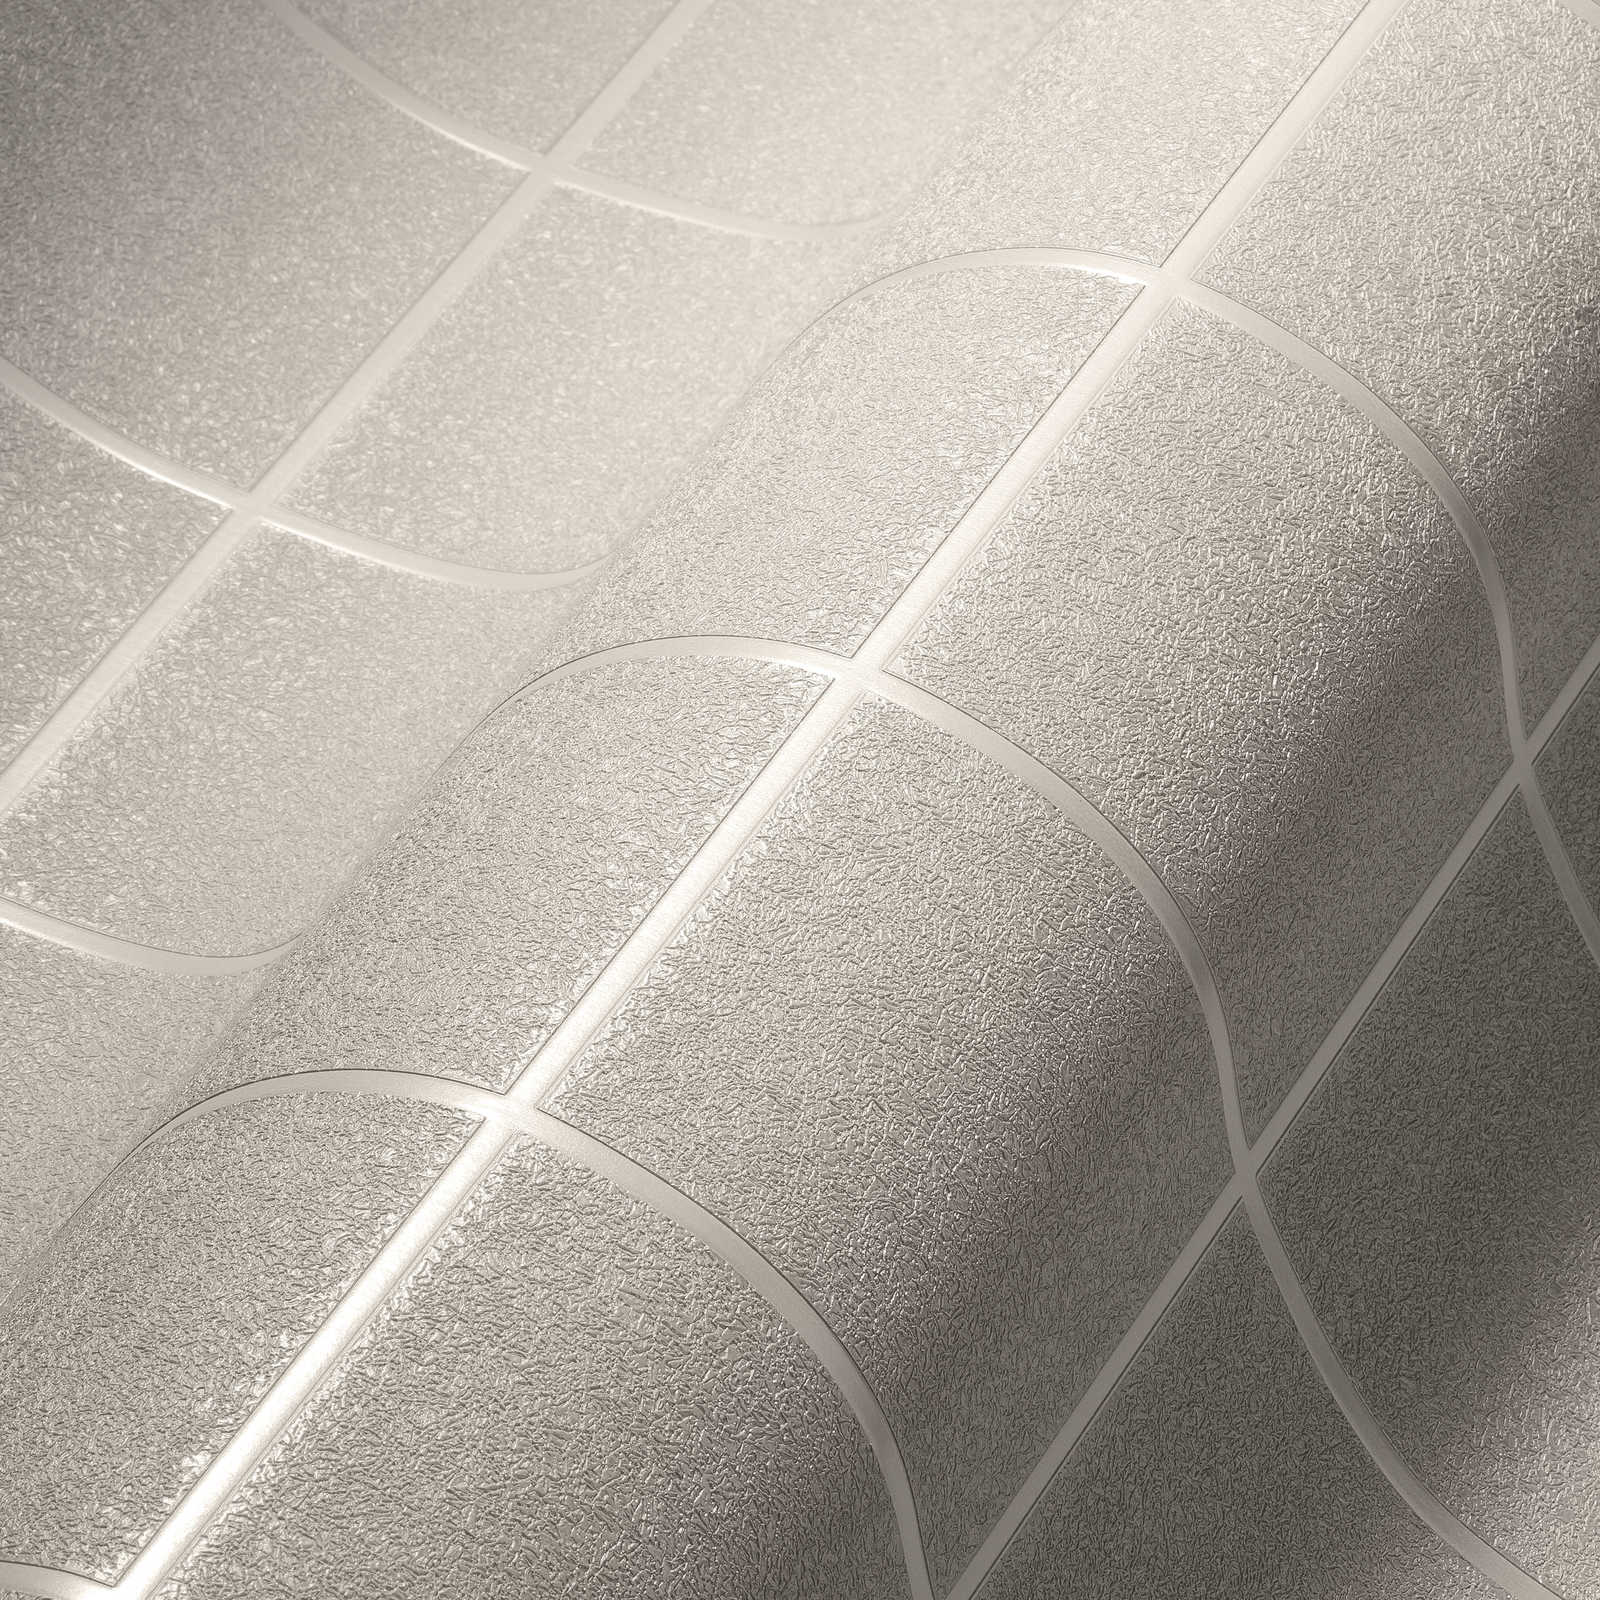             Tapete mit Fliesenmuster und 3D-Effekt, meliert – Silber, Grau, Weiß
        